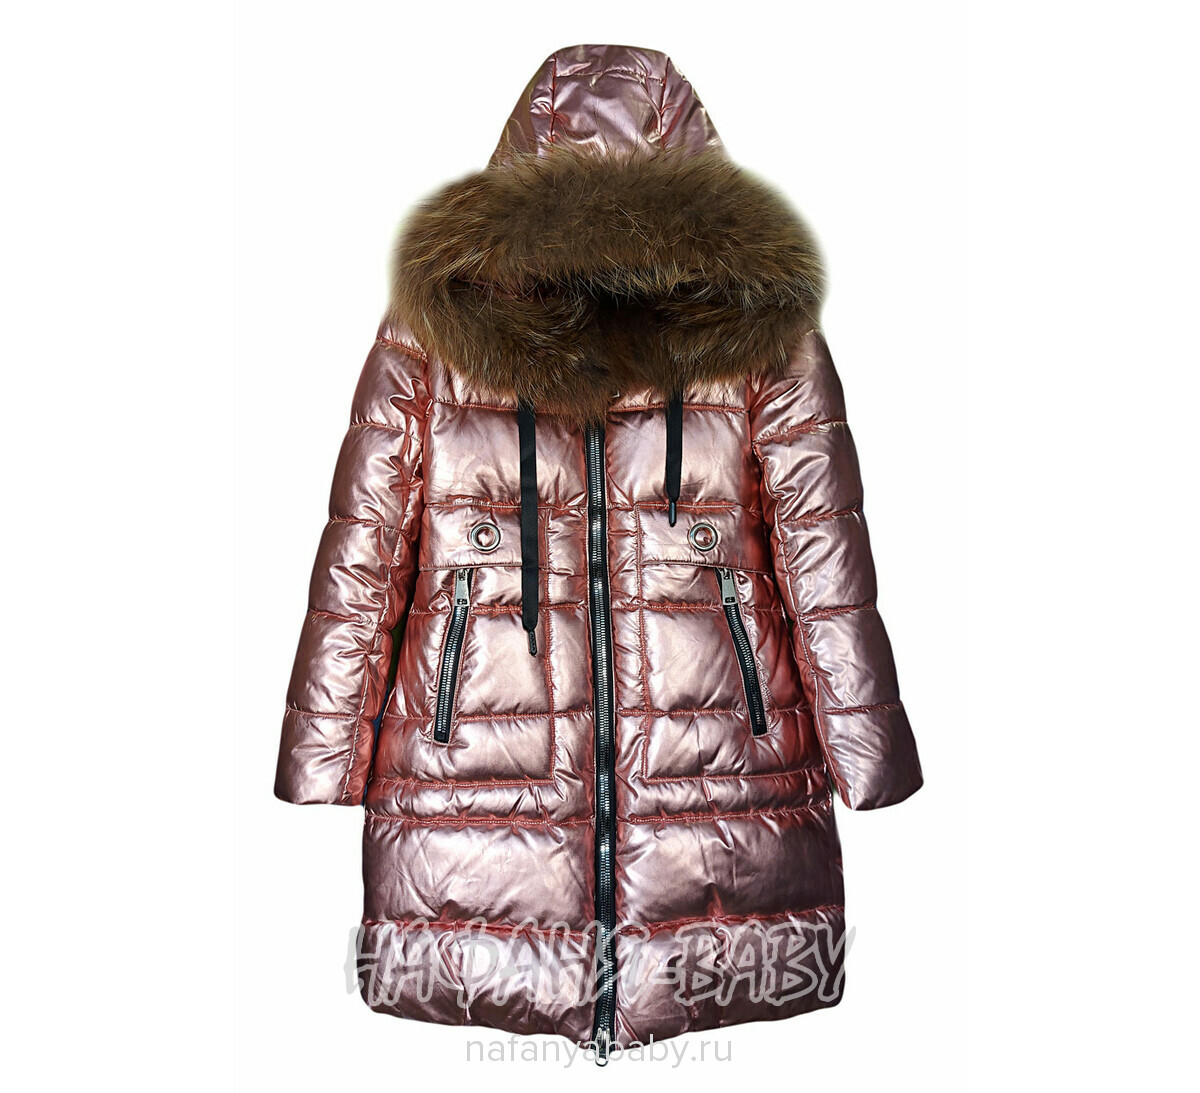 Зимнее подростковое пальто YINUO, купить в интернет магазине Нафаня. арт: 8810.